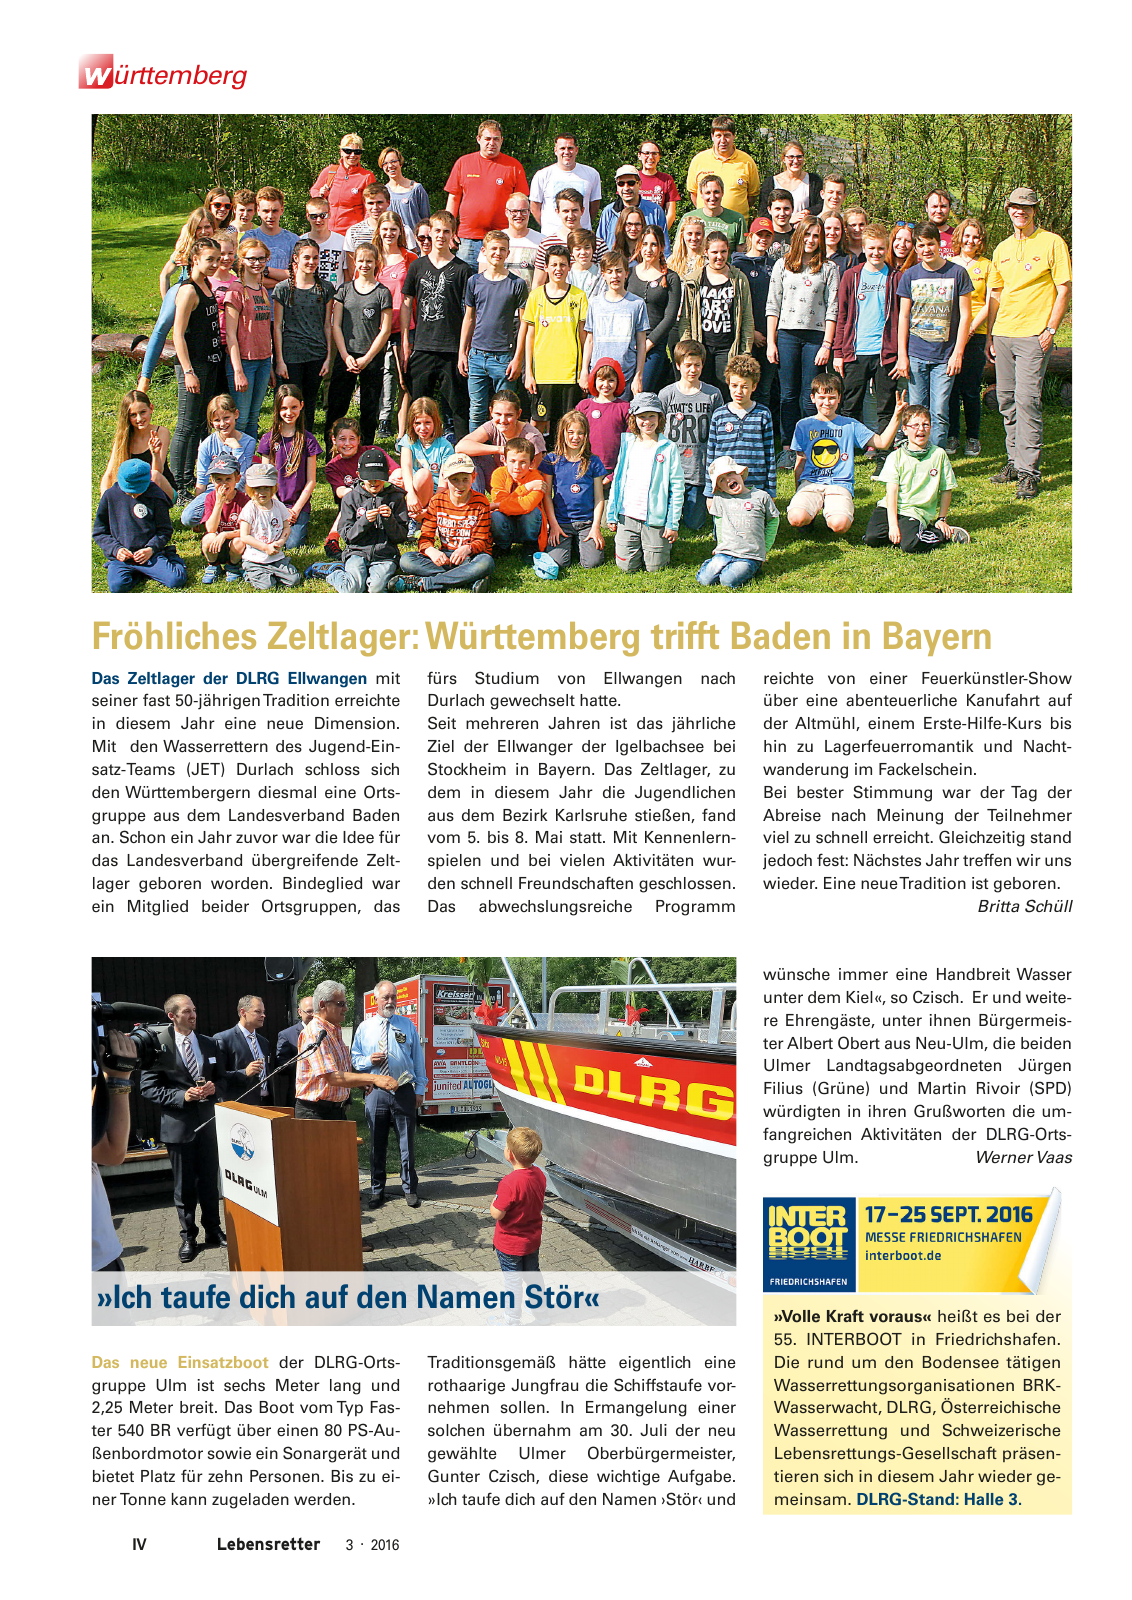 Vorschau Lebensretter 3/2016 - Regionalausgabe Württemberg Seite 6